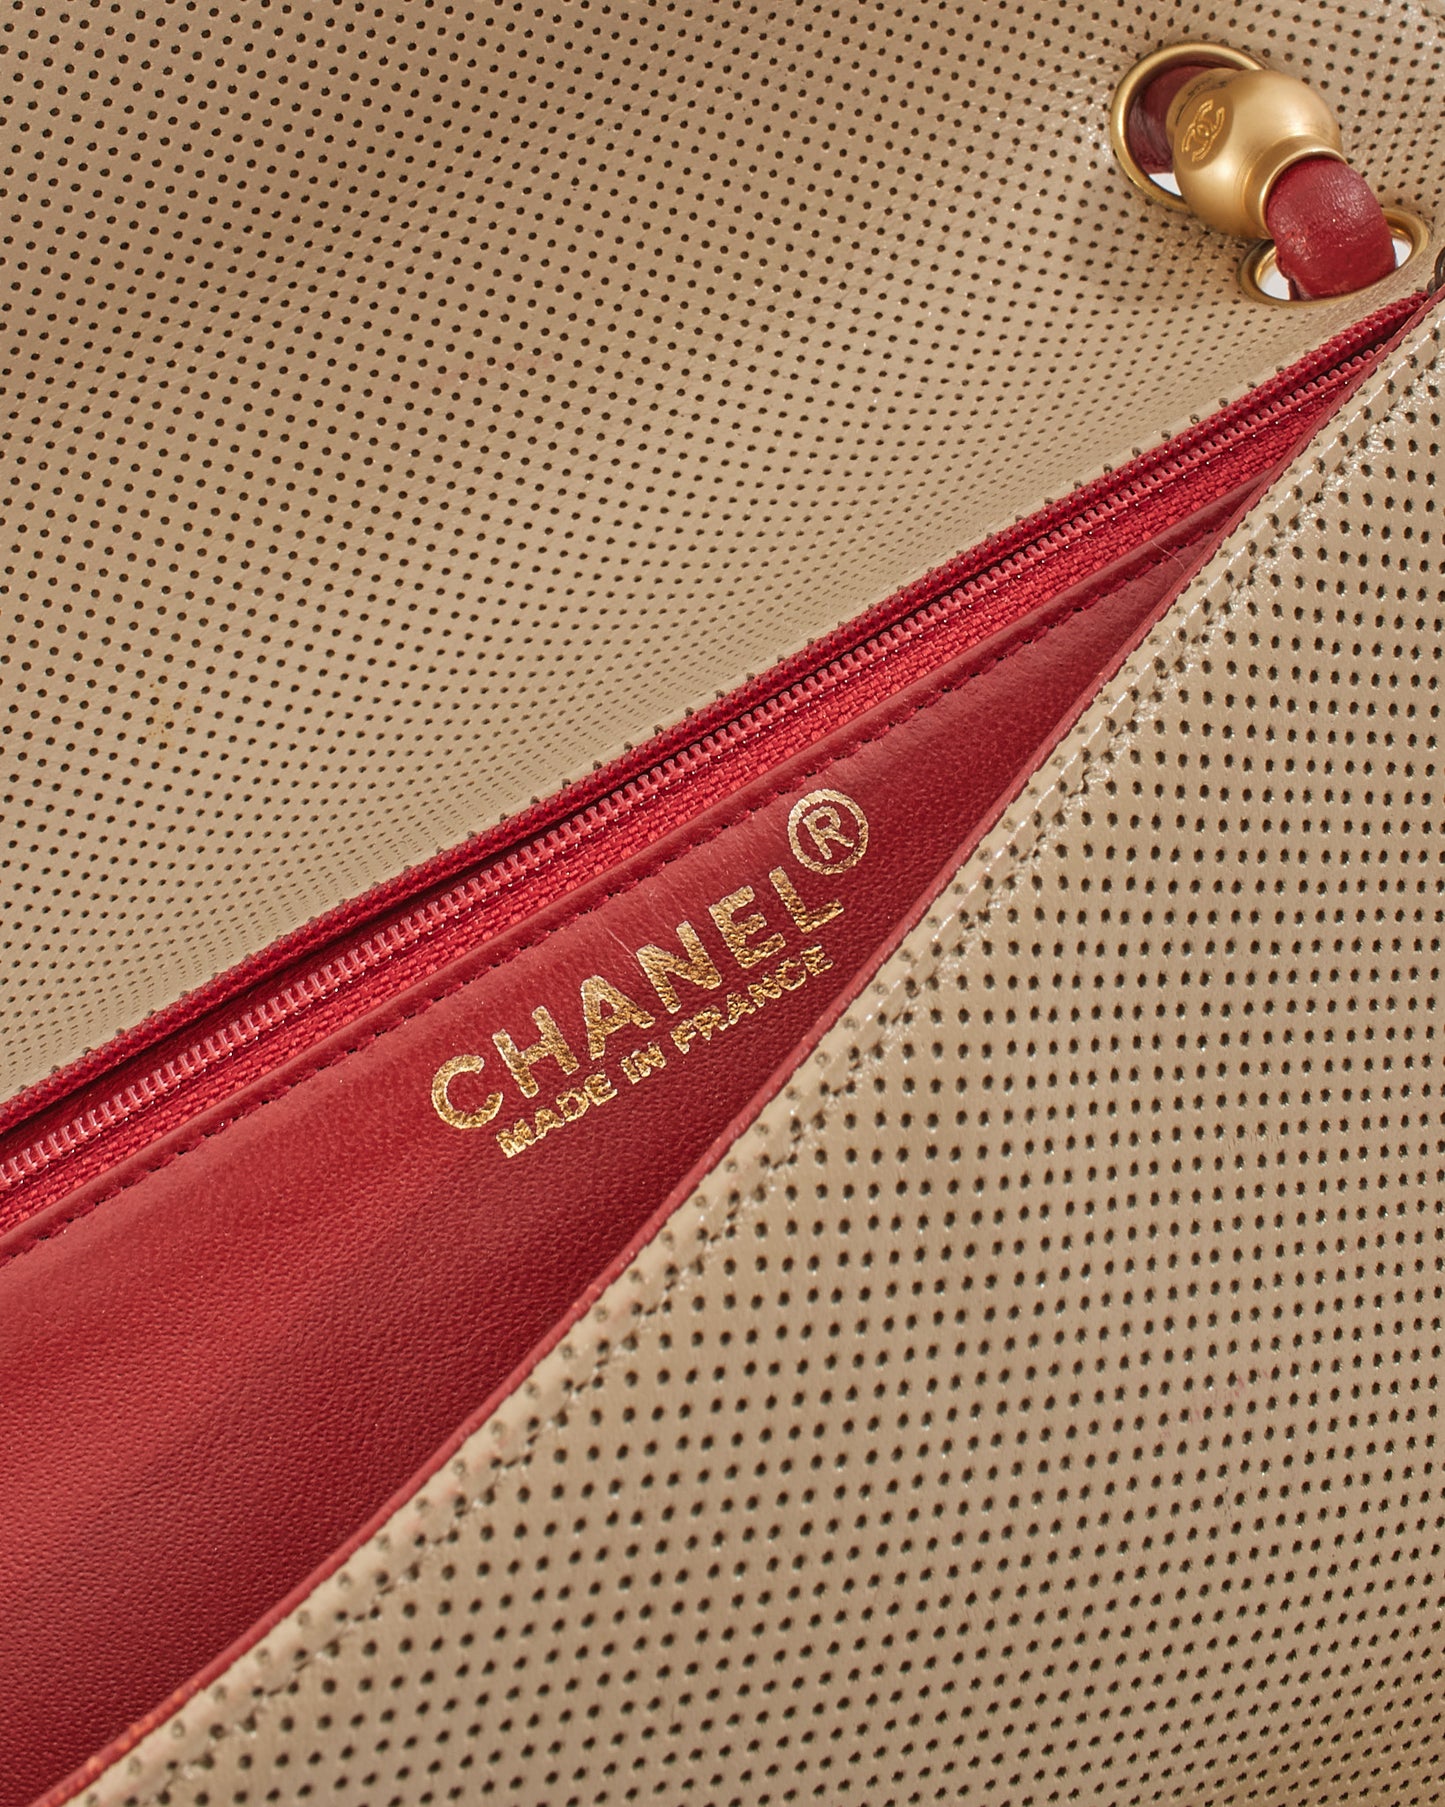 Sac à rabat en cuir perforé beige/rouge vintage Chanel avec détails dorés